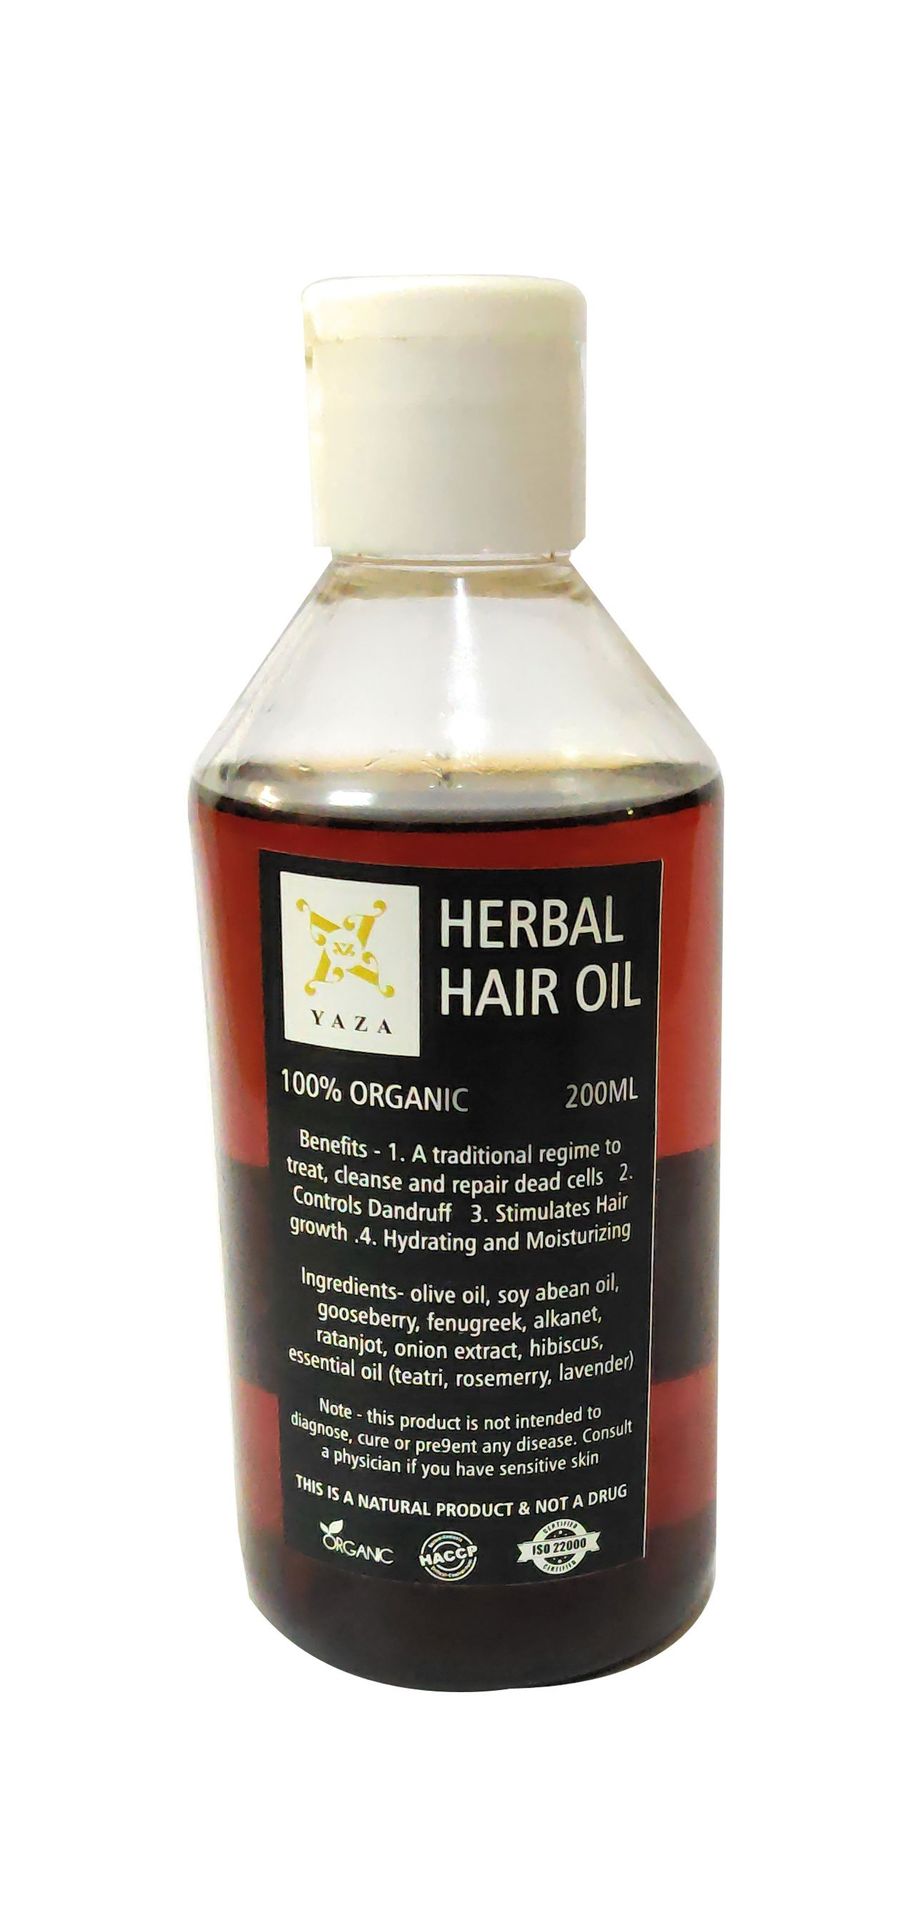 Yaza Herbal Hair Oil 200ml - hfnl!fe